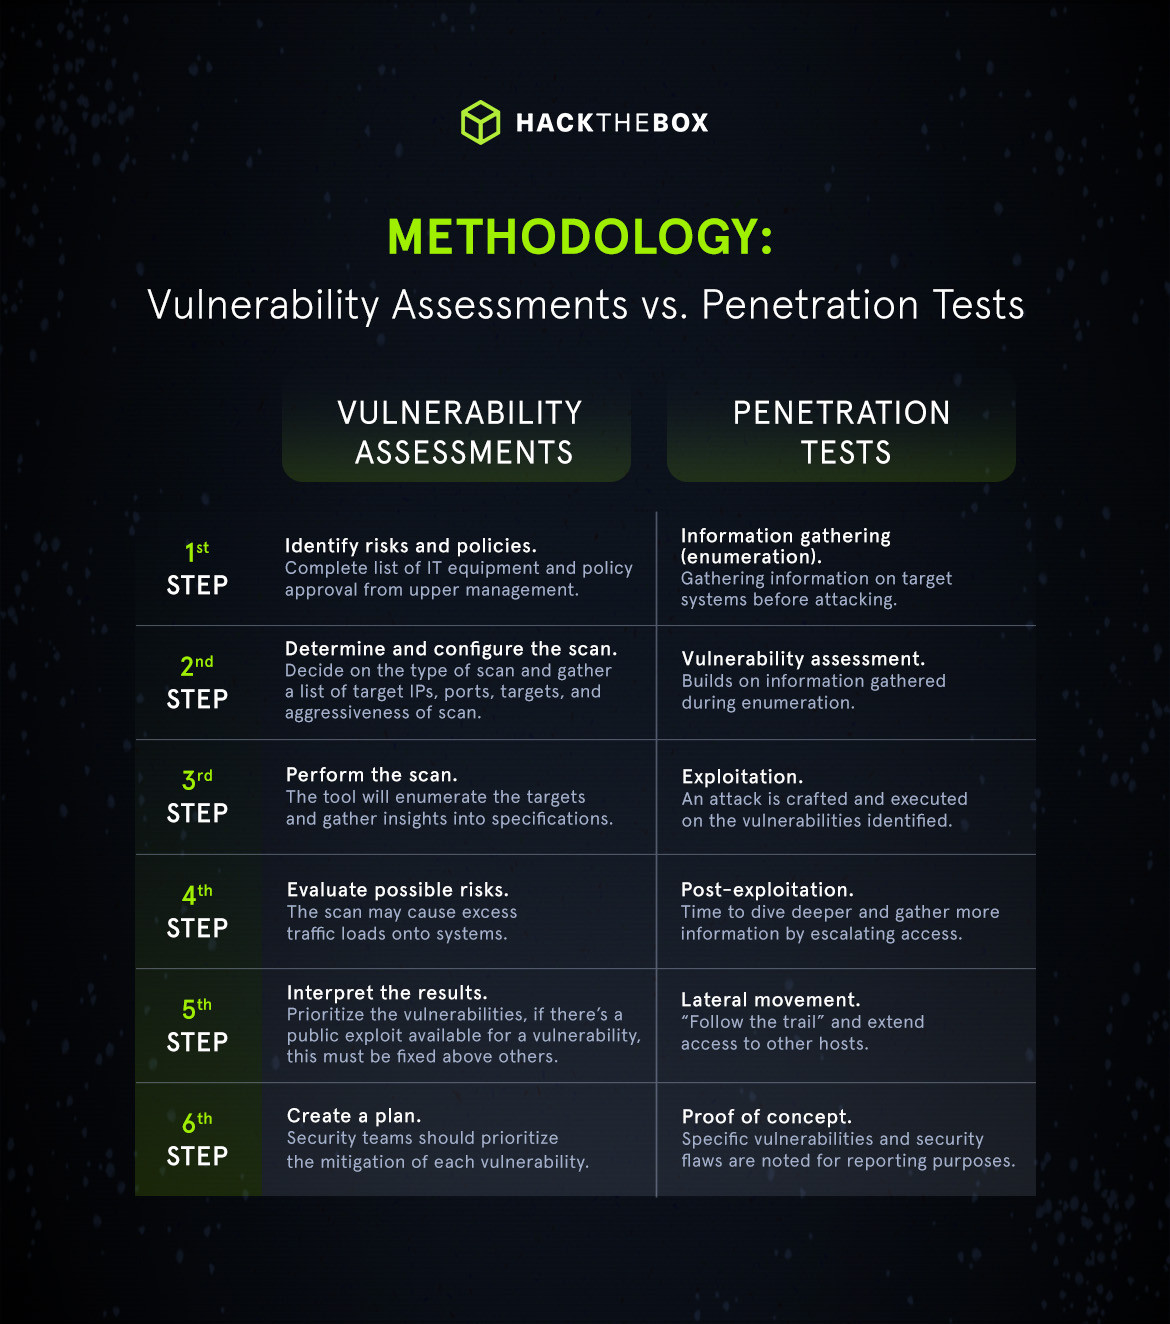 vulnerability assessments vs penetration test method